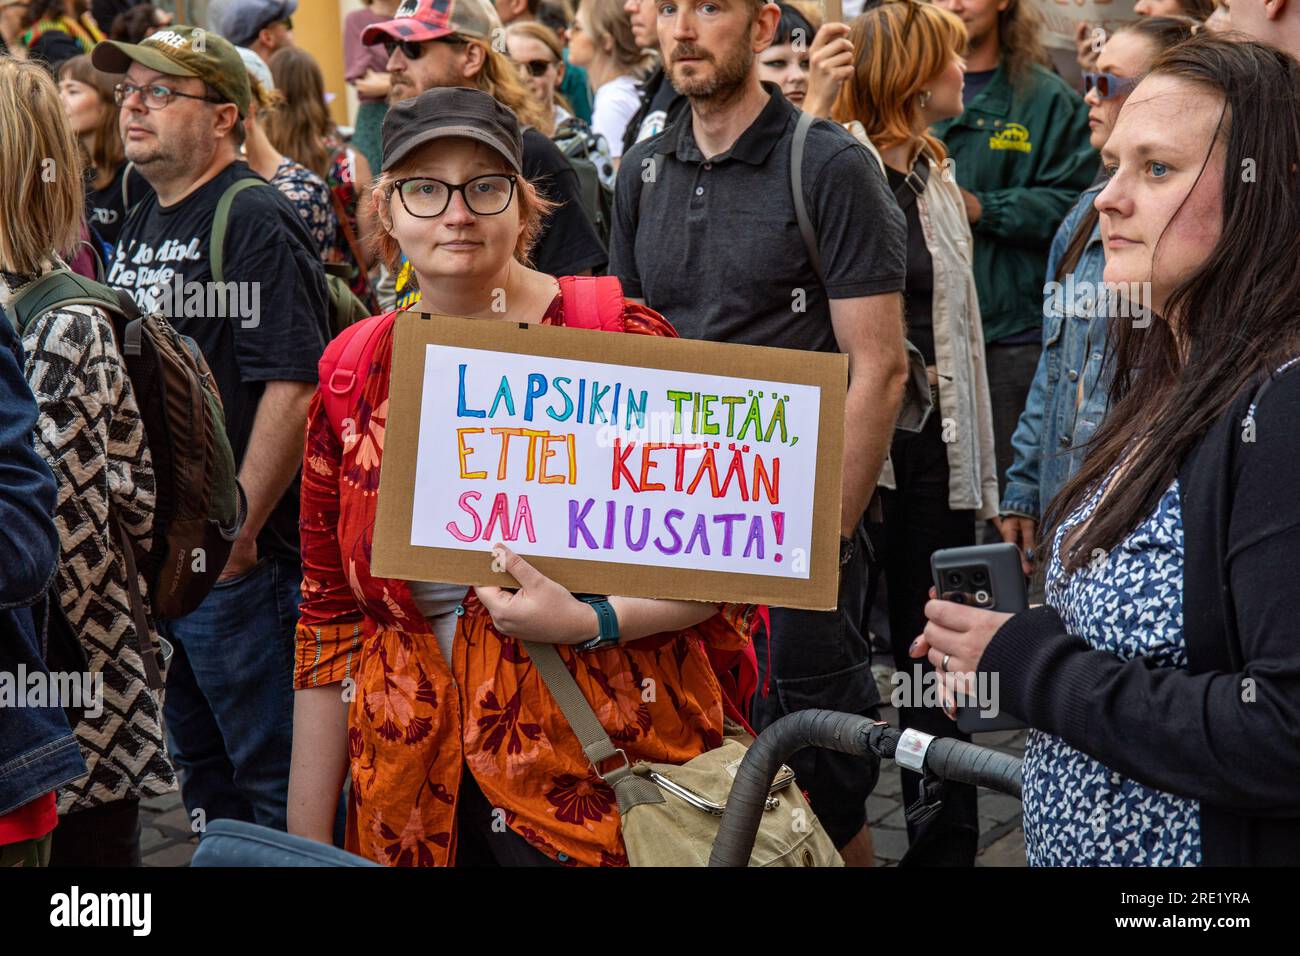 Eine Frau mit einem handgemachten Schild bei Nollatoleranssi! Demonstration gegen rechtsextreme Politik in der Regierung von PM Petteri Orpo in Helsinki, Finnland. Stockfoto